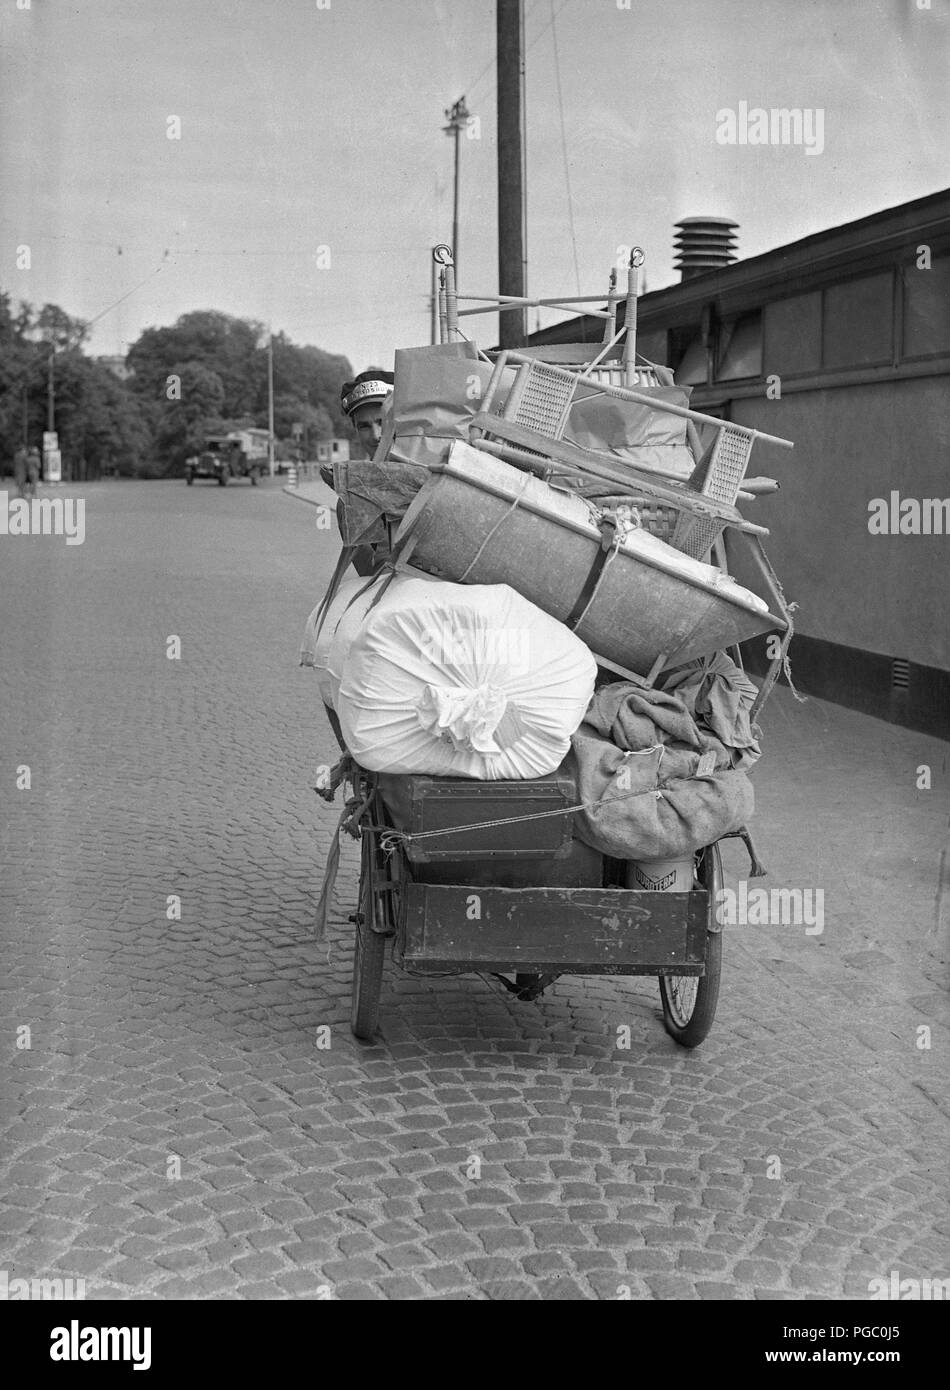 1940 Transport. Un jeune homme qui travaille comme un vélo messanger et le transport des marchandises dans la ville de Stockholm avec ses vélos de transport. Juin 1940. 146-8 Kristoffersson Photo Banque D'Images